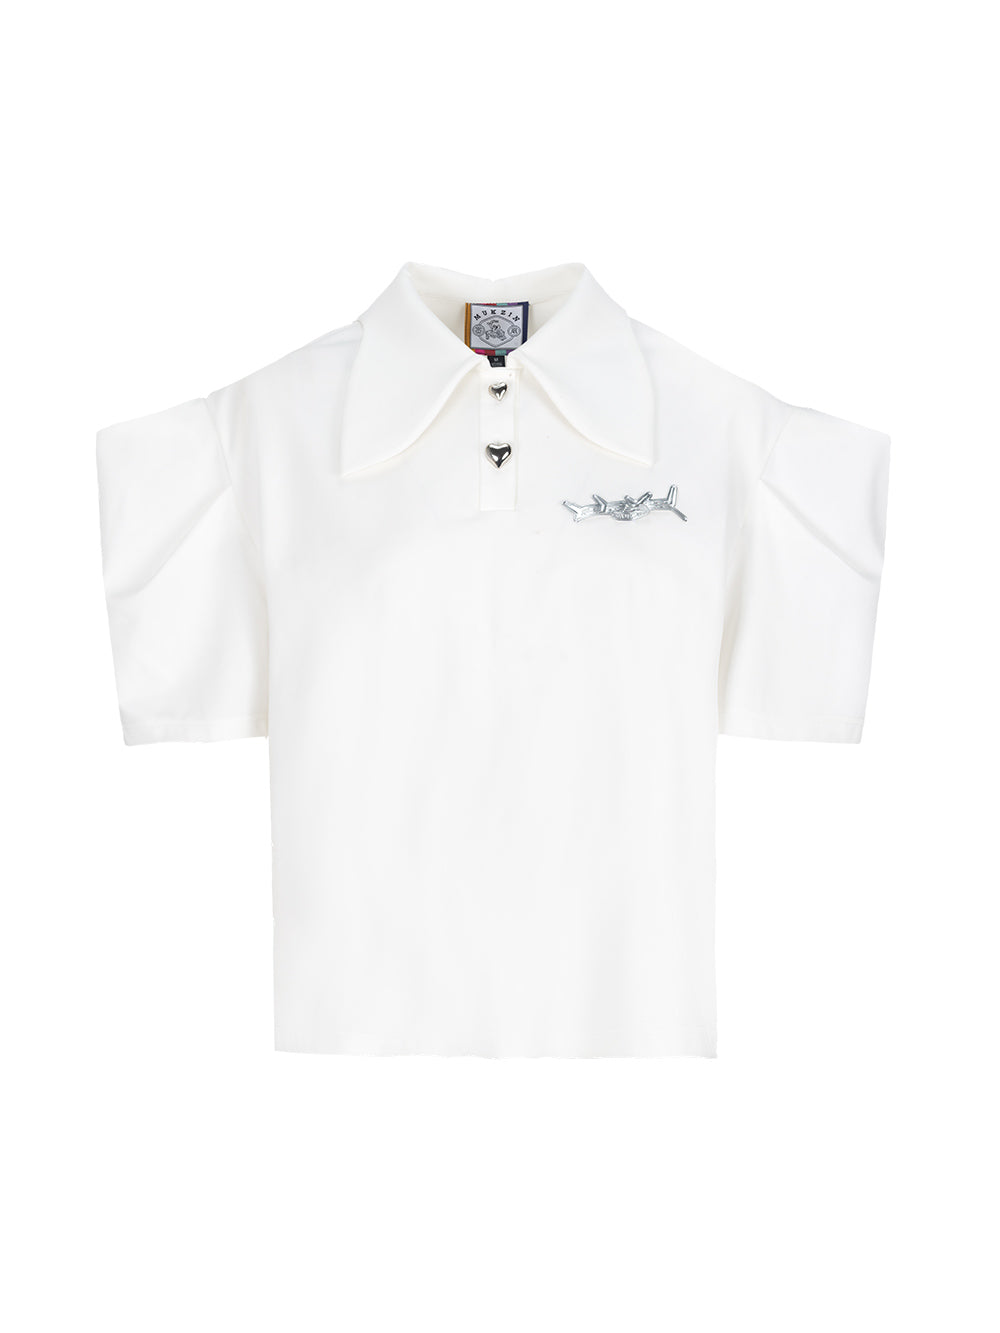 MUKZIN Cute Puff Sleeves White Polo T-shirt